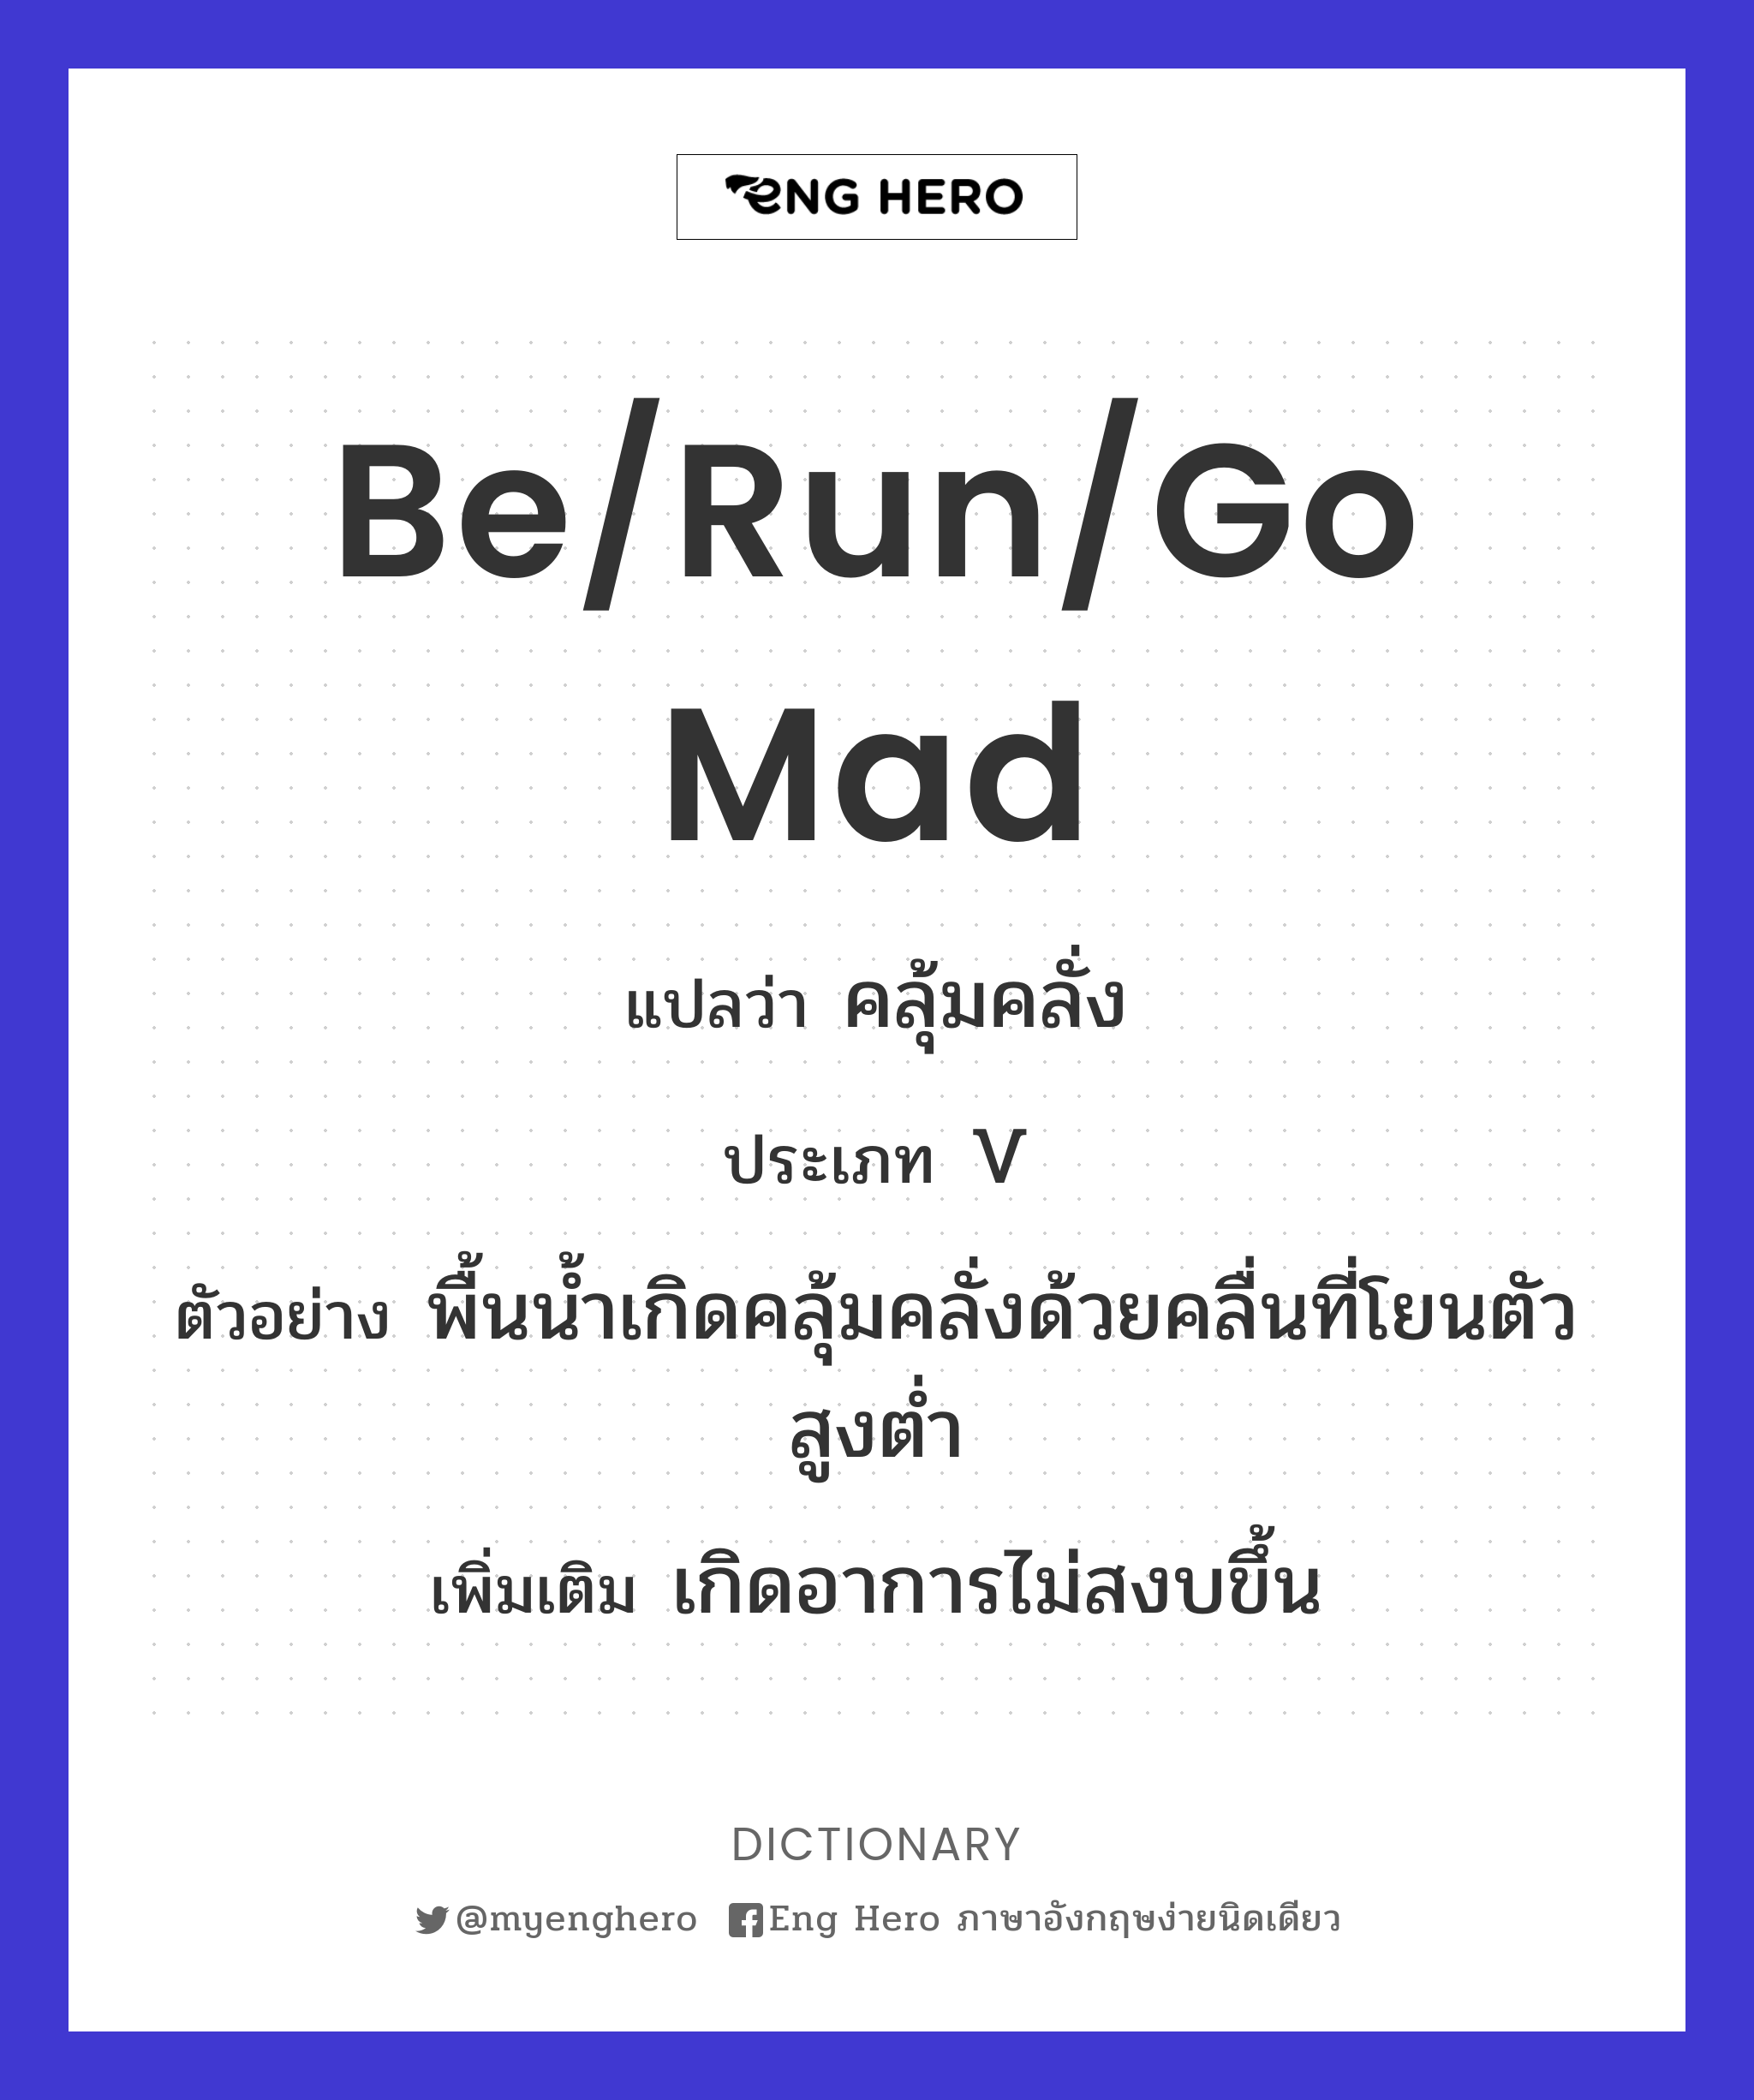 be/run/go mad